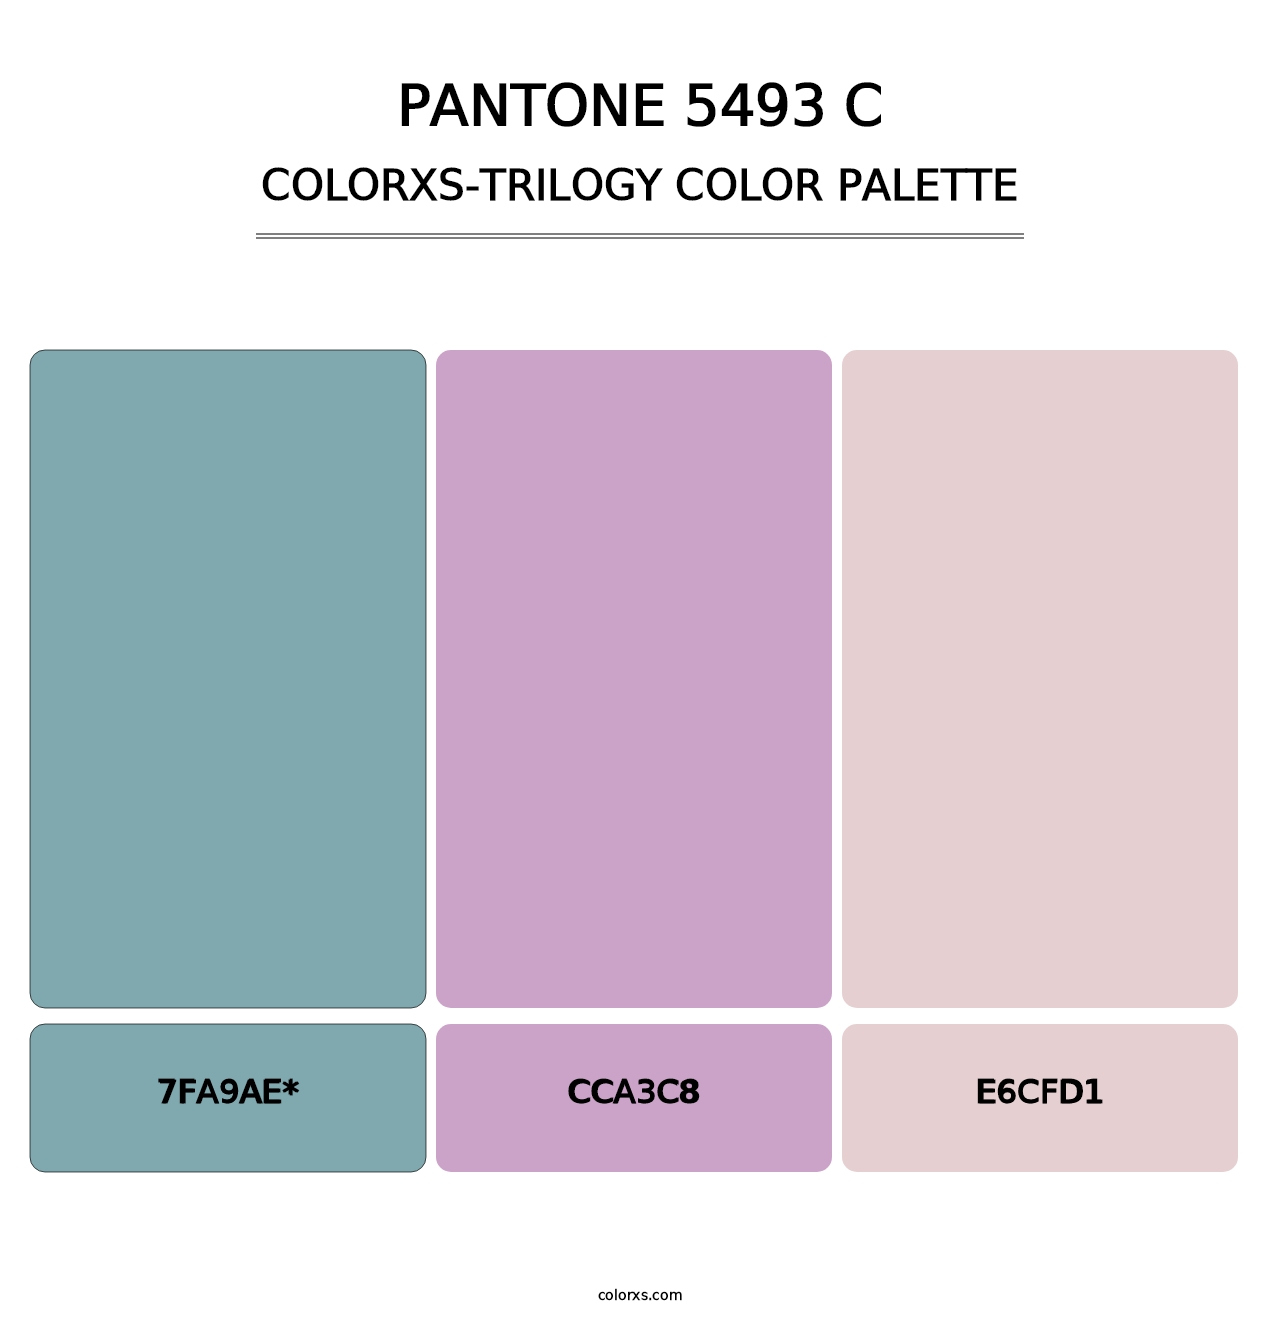 PANTONE 5493 C - Colorxs Trilogy Palette